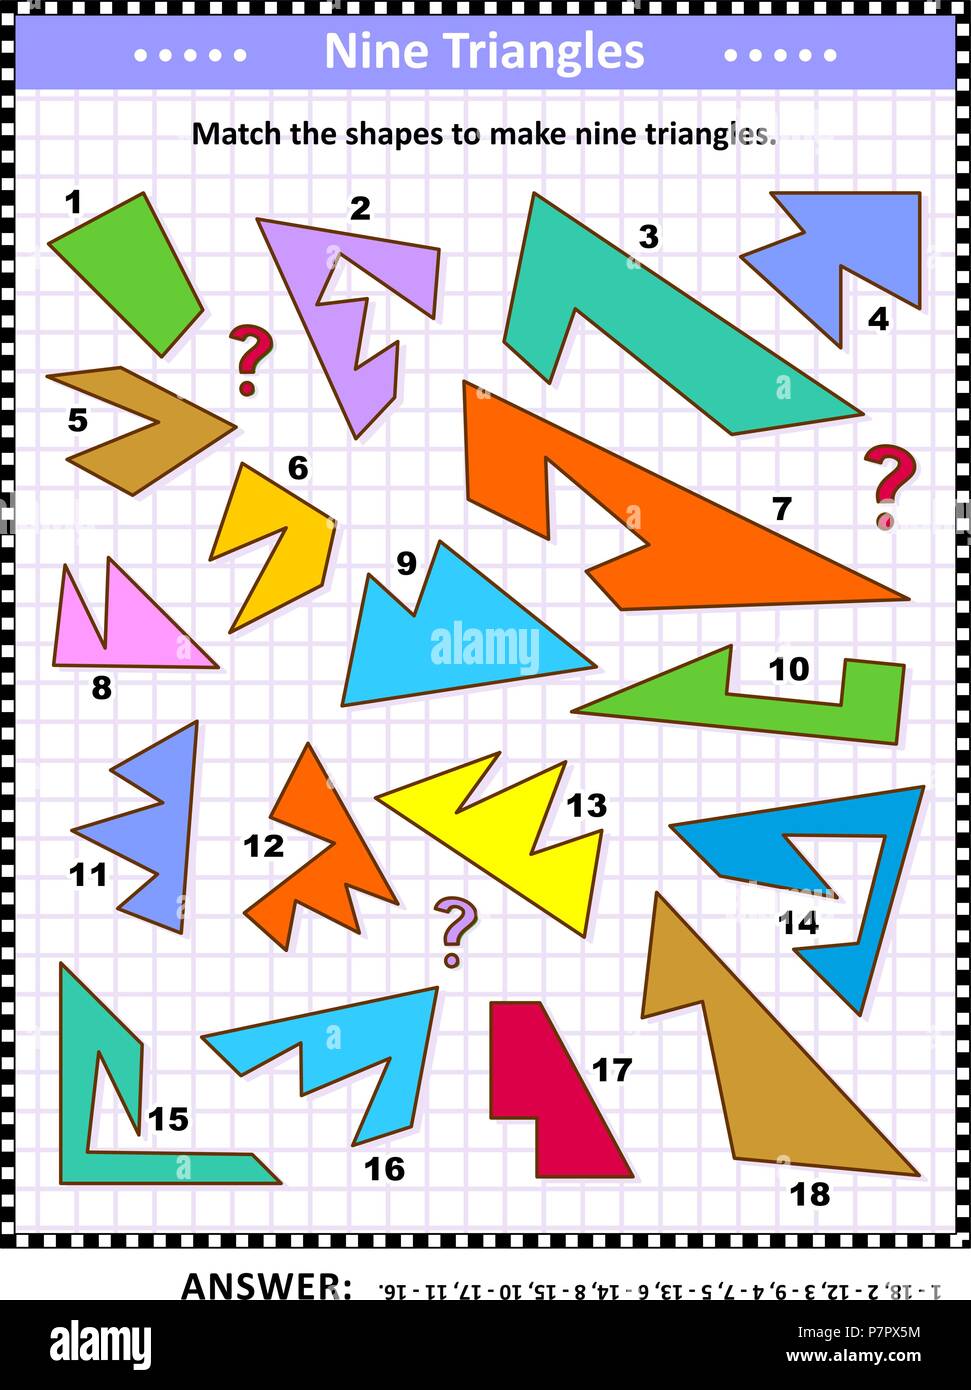 IQ e spaziale delle competenze matematiche di formazione visual puzzle: corrispondono le forme per rendere nove triangoli. Risposta inclusa. Illustrazione Vettoriale